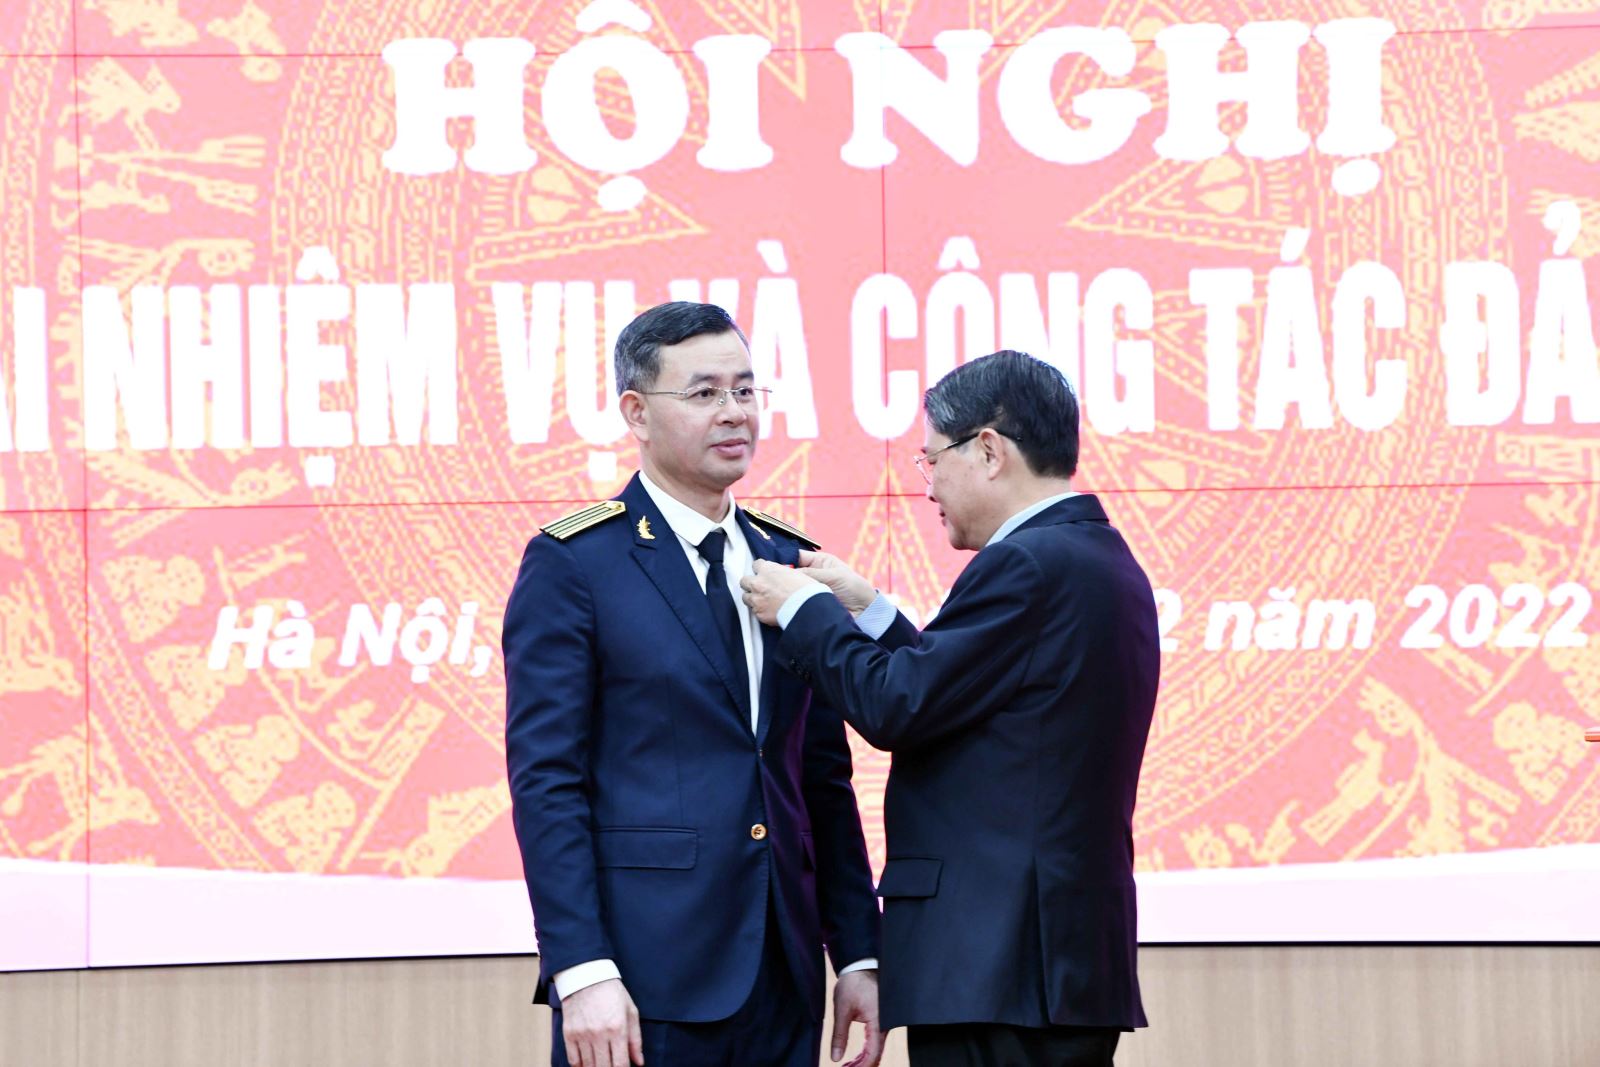 Phó Chủ tịch Quốc hội Nguyễn Đức Hải thay mặt Lãnh đạo Đảng và Nhà nước đã trao tặng Huân chương Lao động hạng Nhất cho Tổng Kiểm toán nhà nước Ngô Văn Tuấn